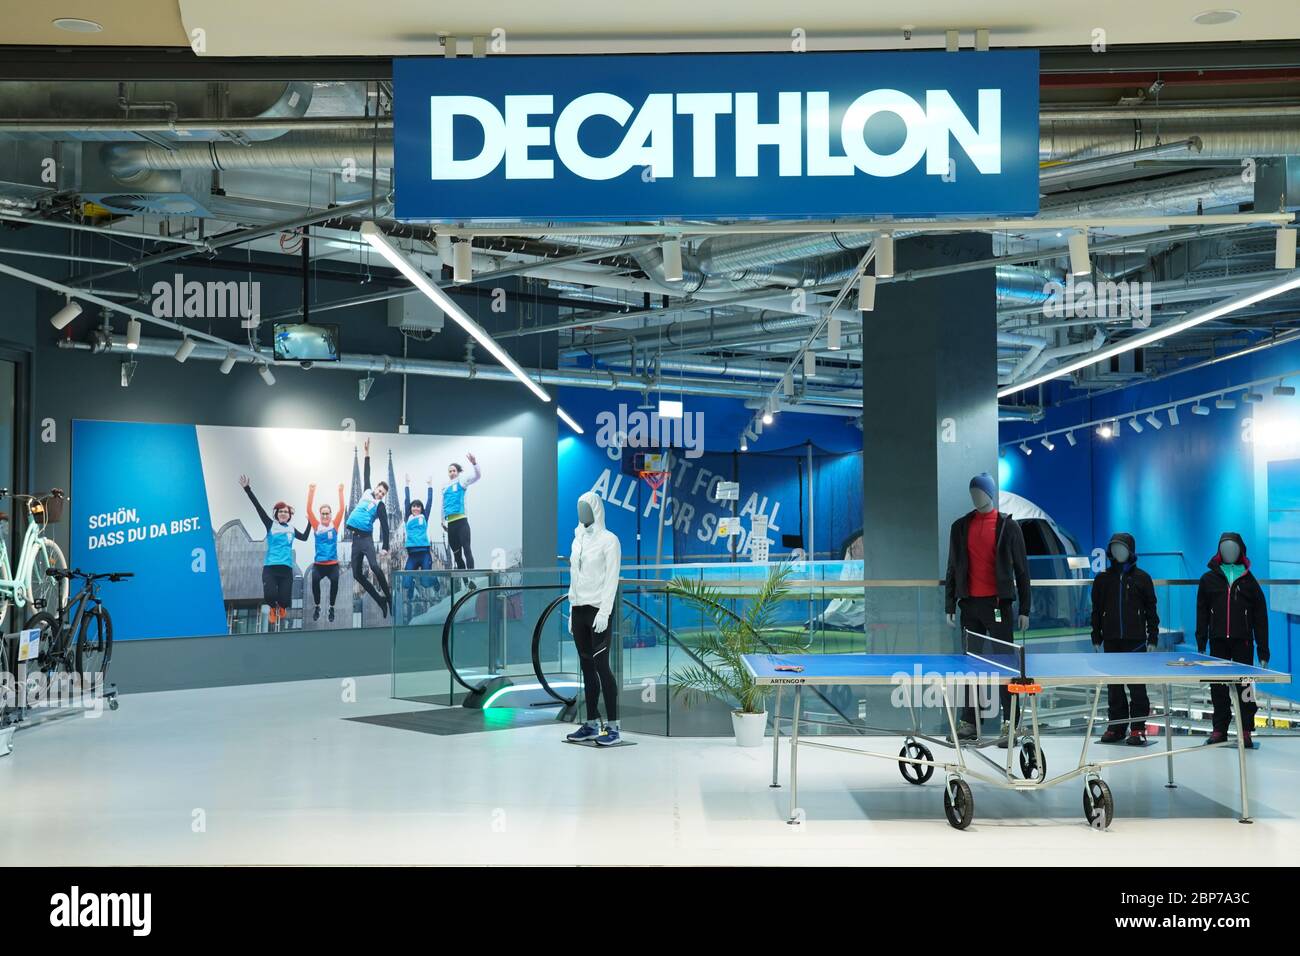 Economy, Decathlon Sports Retailer Stock Photo